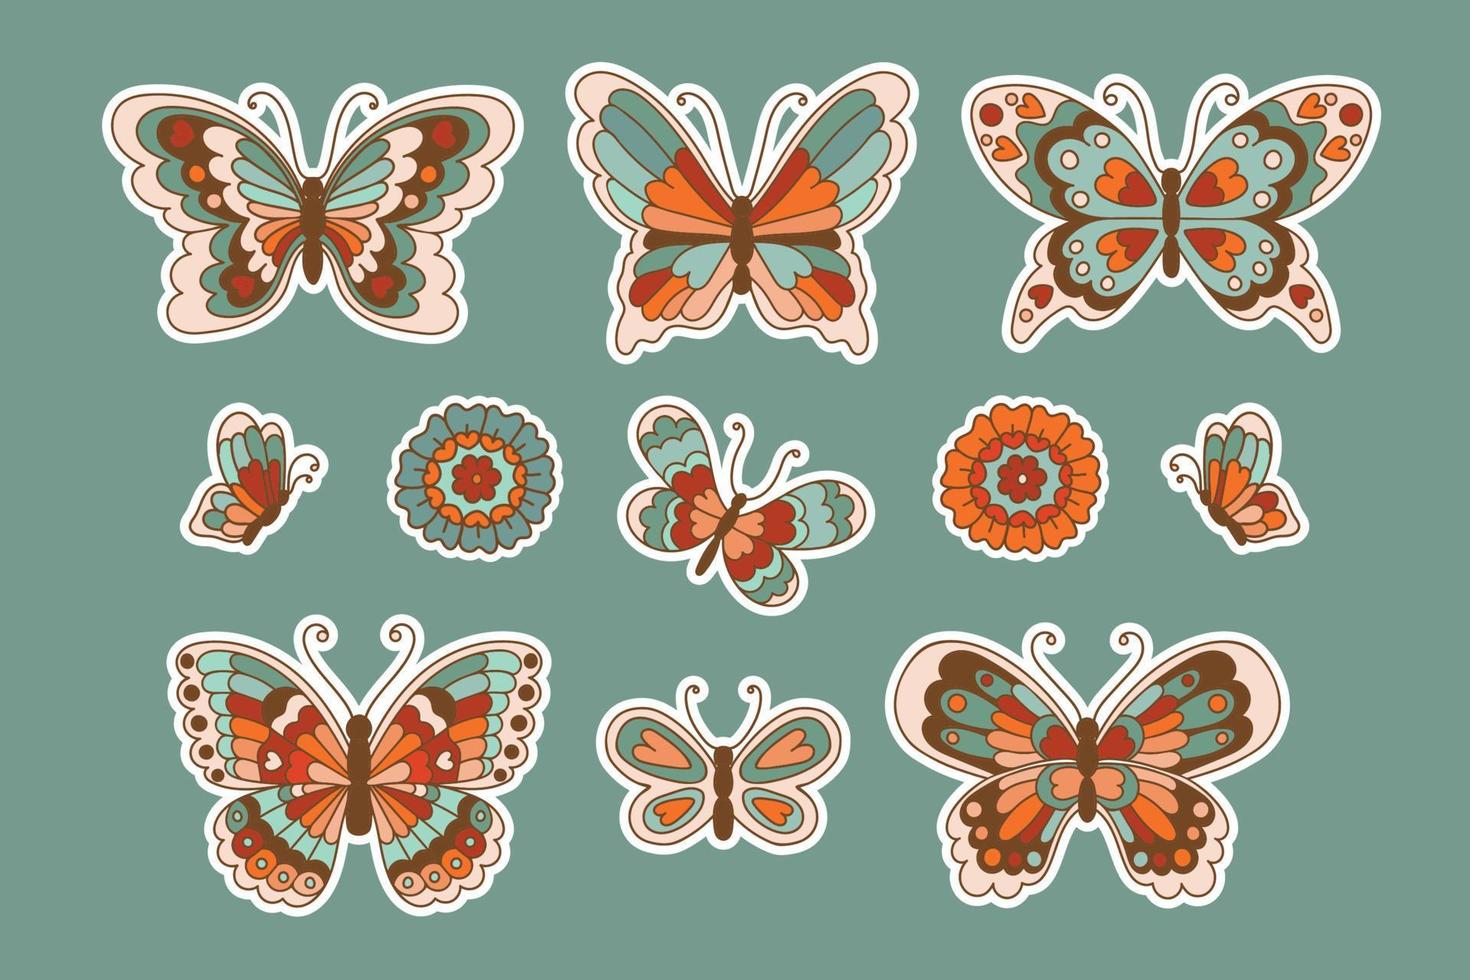 Coleção de adesivos de borboletas e flores dos anos 70 em estilo vintage. conjunto de ilustração vetorial de insetos isolados. vetor